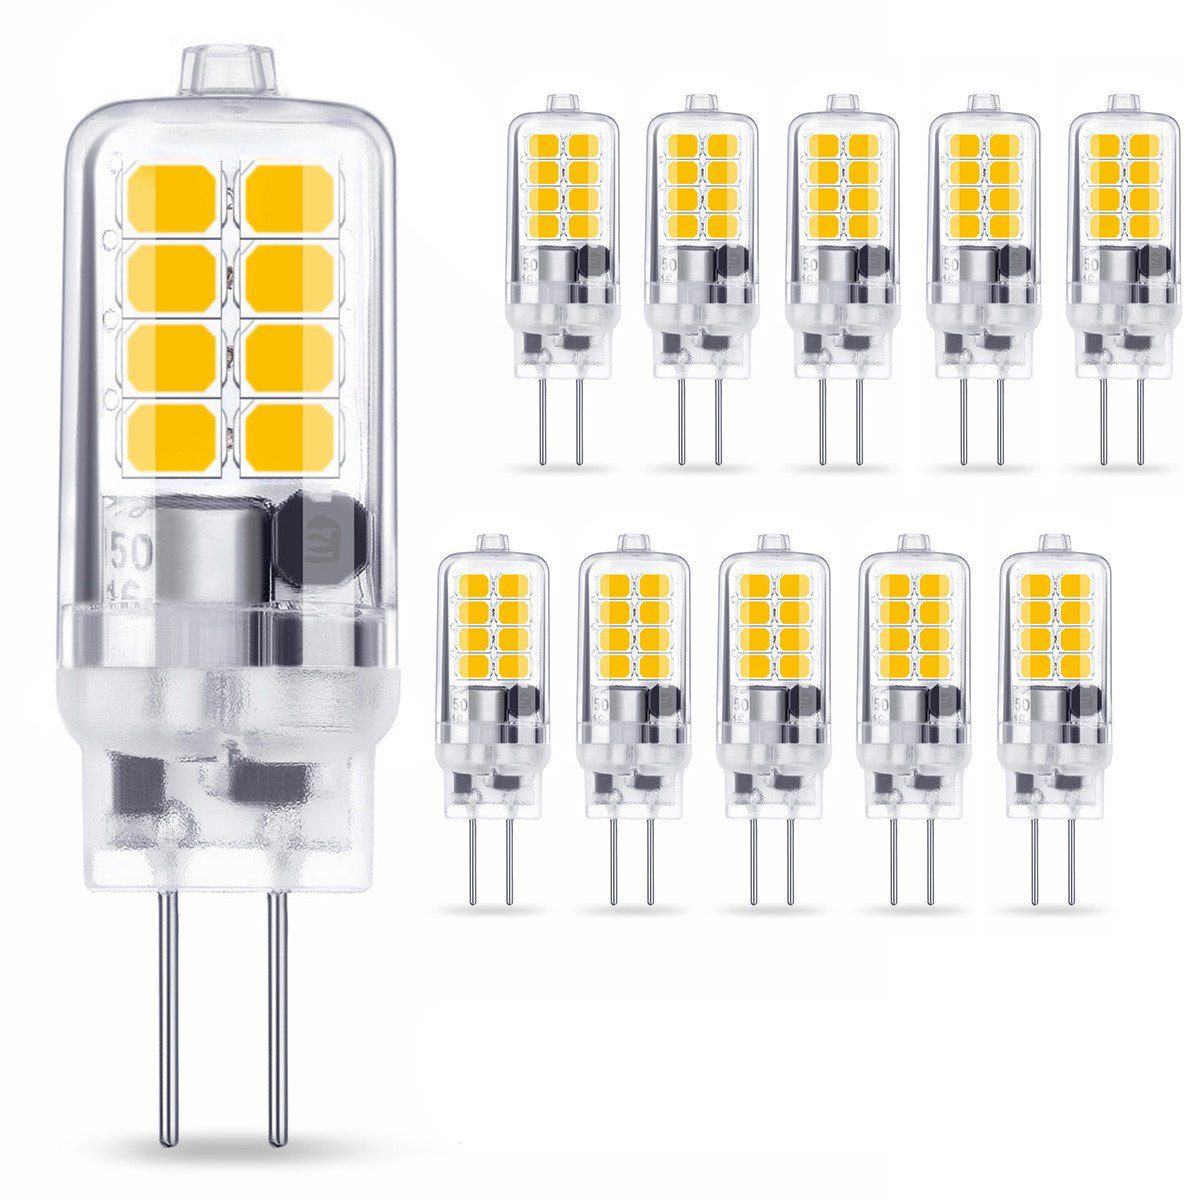 12 V G4 LED Lampen online kaufen